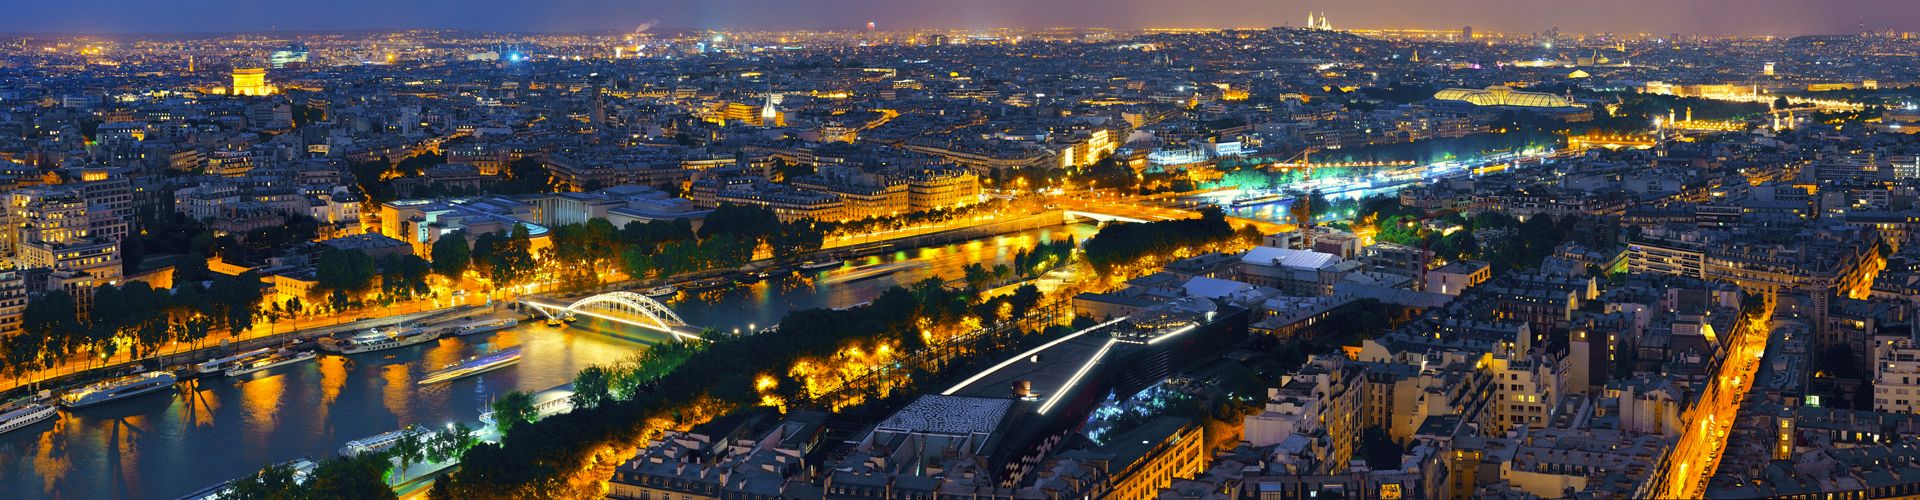 La surélévation des bâtiments à Paris